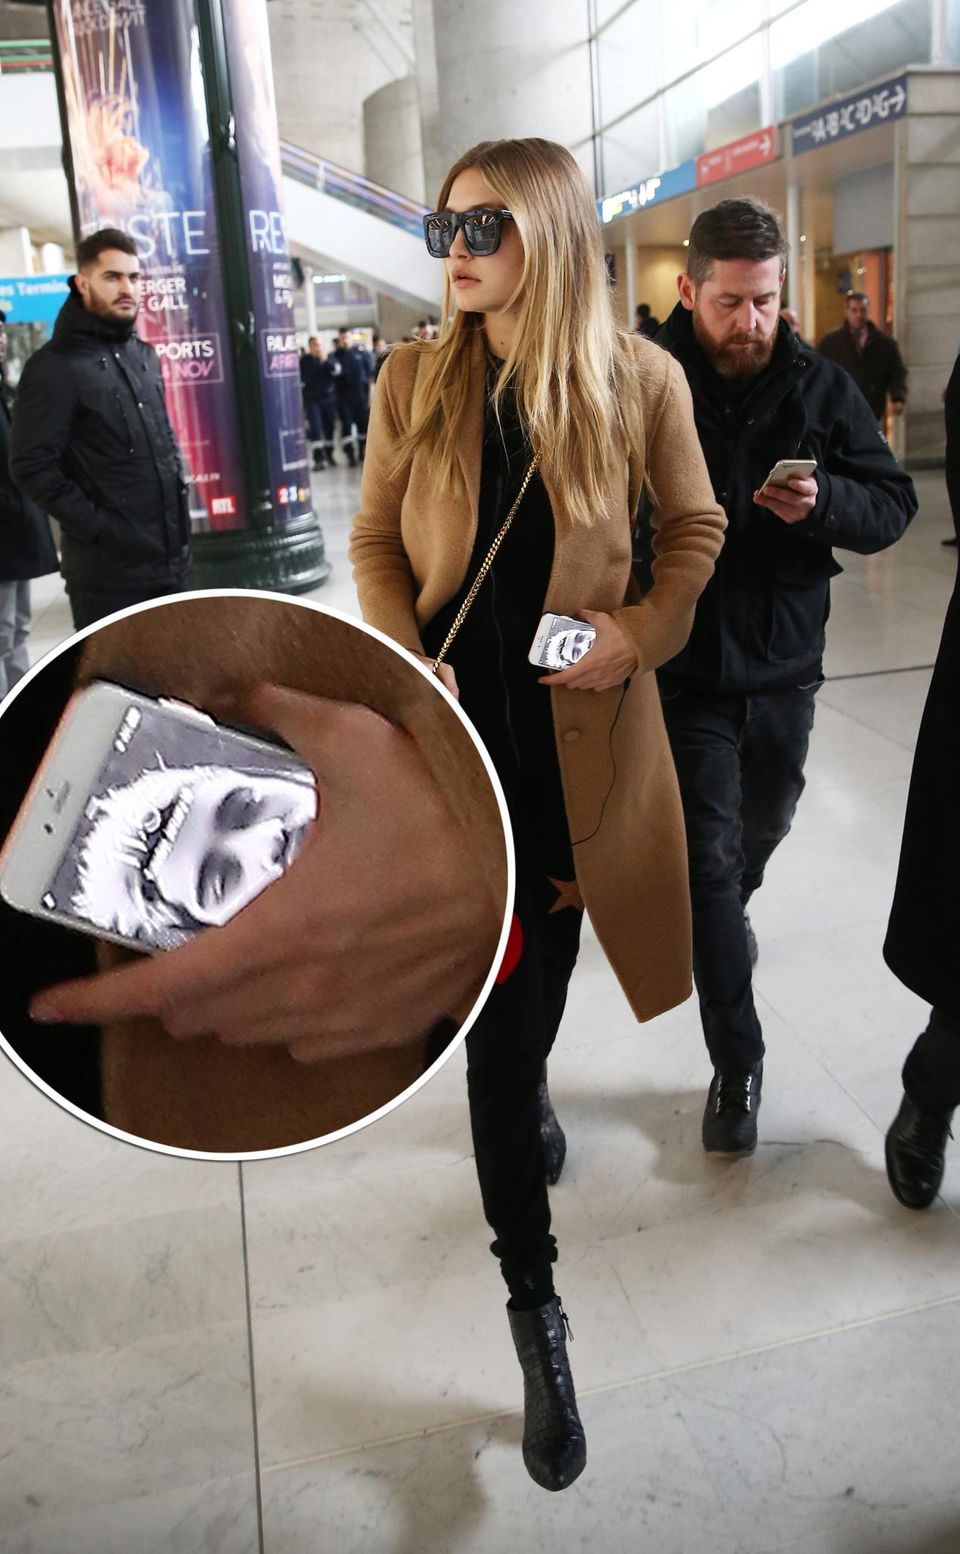 Topmodels wie Gigi Hadid sind eben auch nur normale Menschen - da macht erst recht die Liebe keinen Unterschied. Damit sie ihren Schatz Zayn Malik unterwegs immer bei sich trägt, ziert sein Selfie den Sperrbildschirm ihres iPhones. Niedlich!